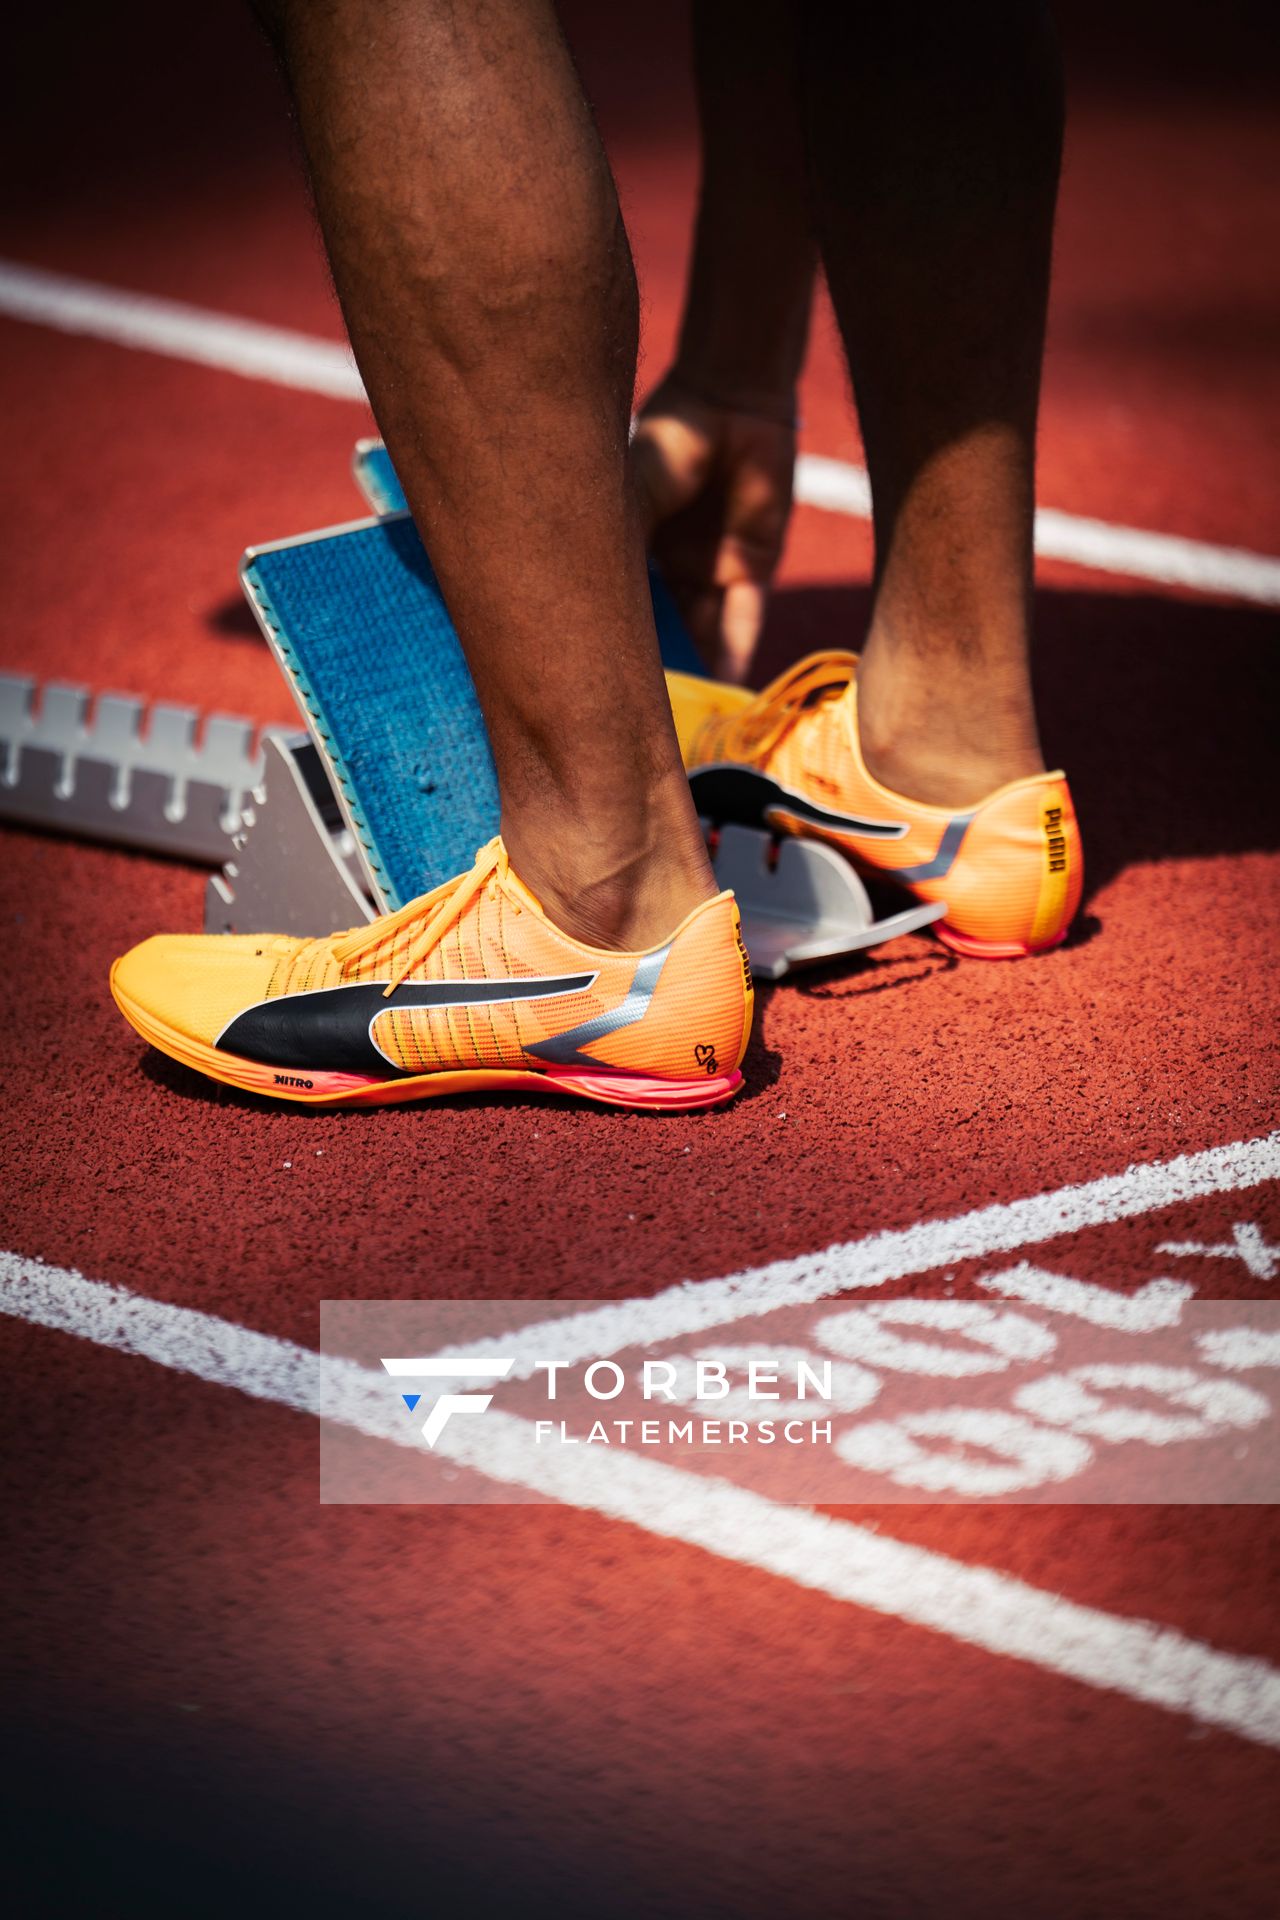 Schuhe von Patrick Schneider (GER) im 400m Halbfinale am 16.08.2022 bei den Leichtathletik-Europameisterschaften in Muenchen